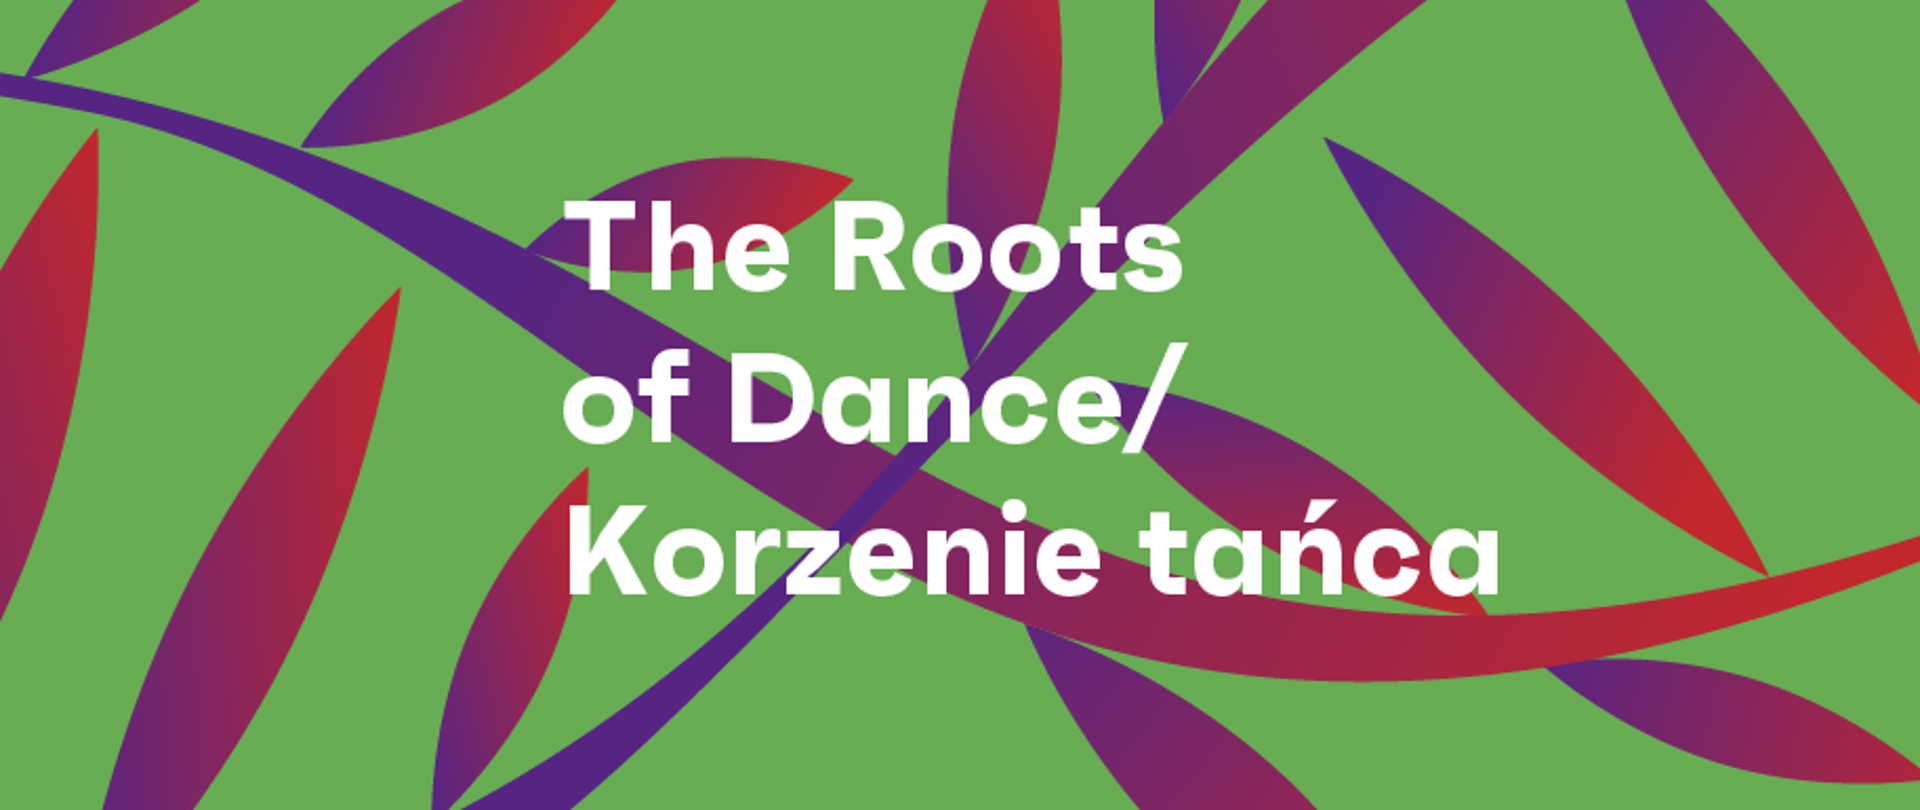 Projekt The Roots of Dance / Korzenie Tańca, Narodowy Instytut Muzyki i Tańca 